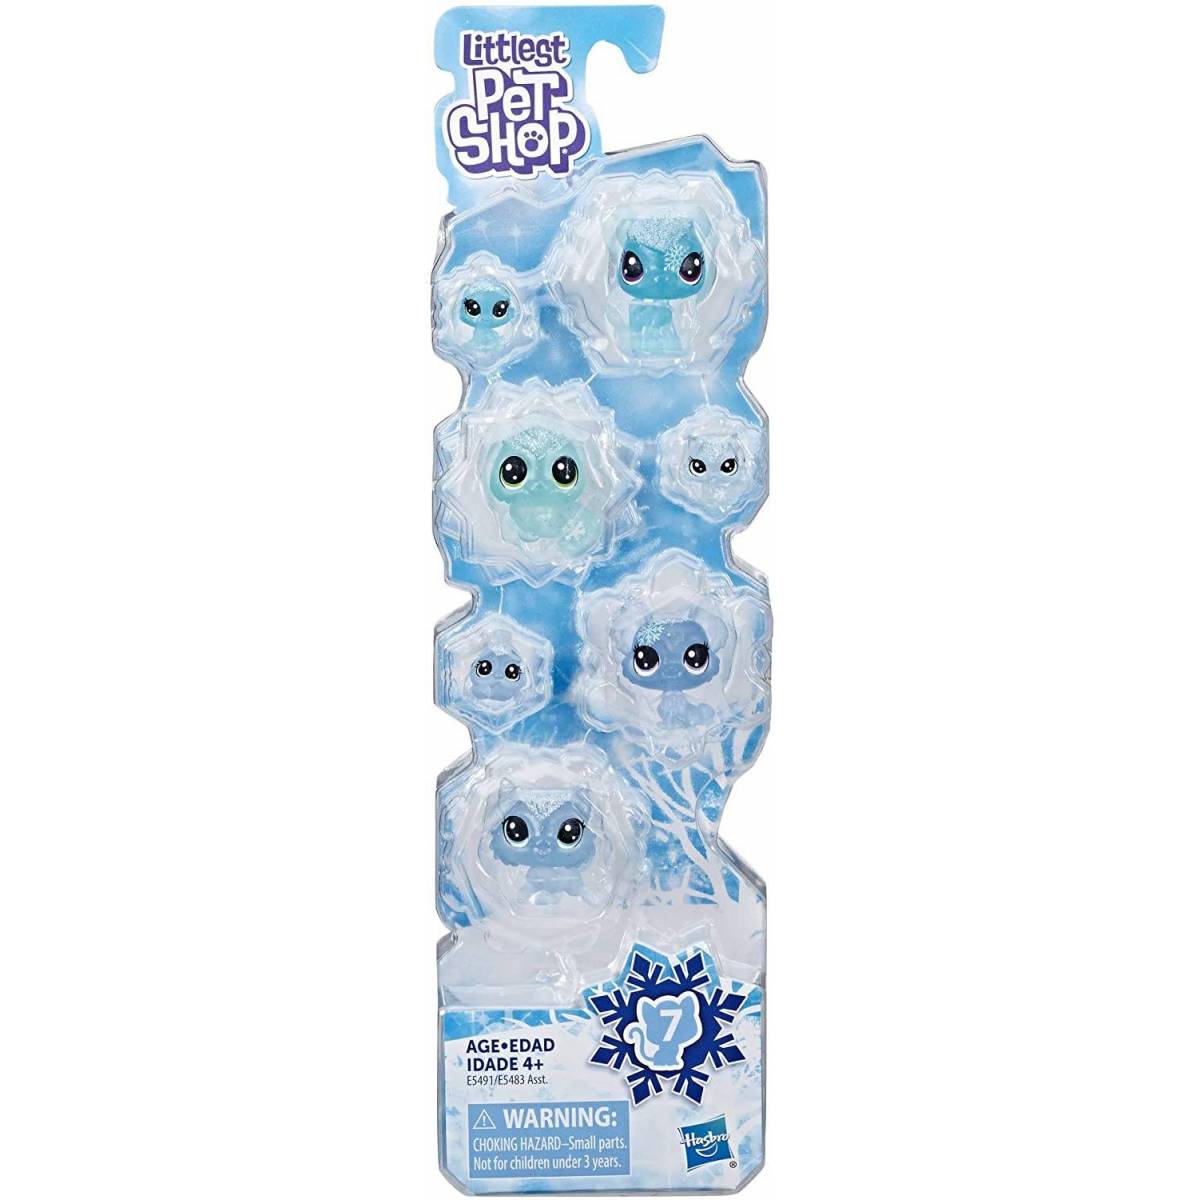 Littlest Pet Shop Frosted Wonderland Pet Friends Toy, Blue Theme, Includes 7 Pets, Ages 4 & Up